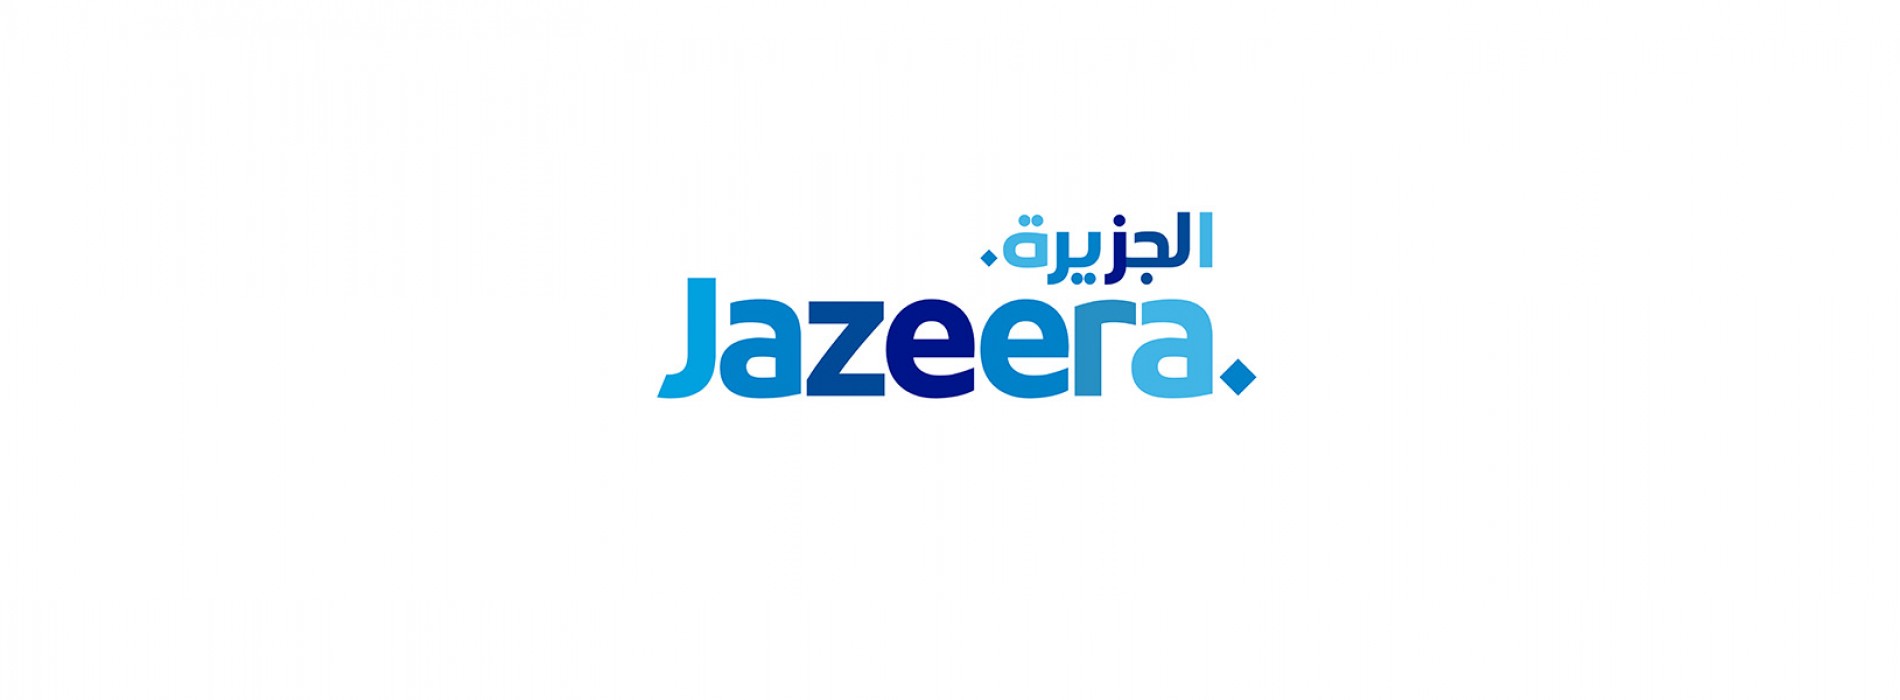 Jazeera Airways announces KD3.8 million in net profit in first quarter 2022